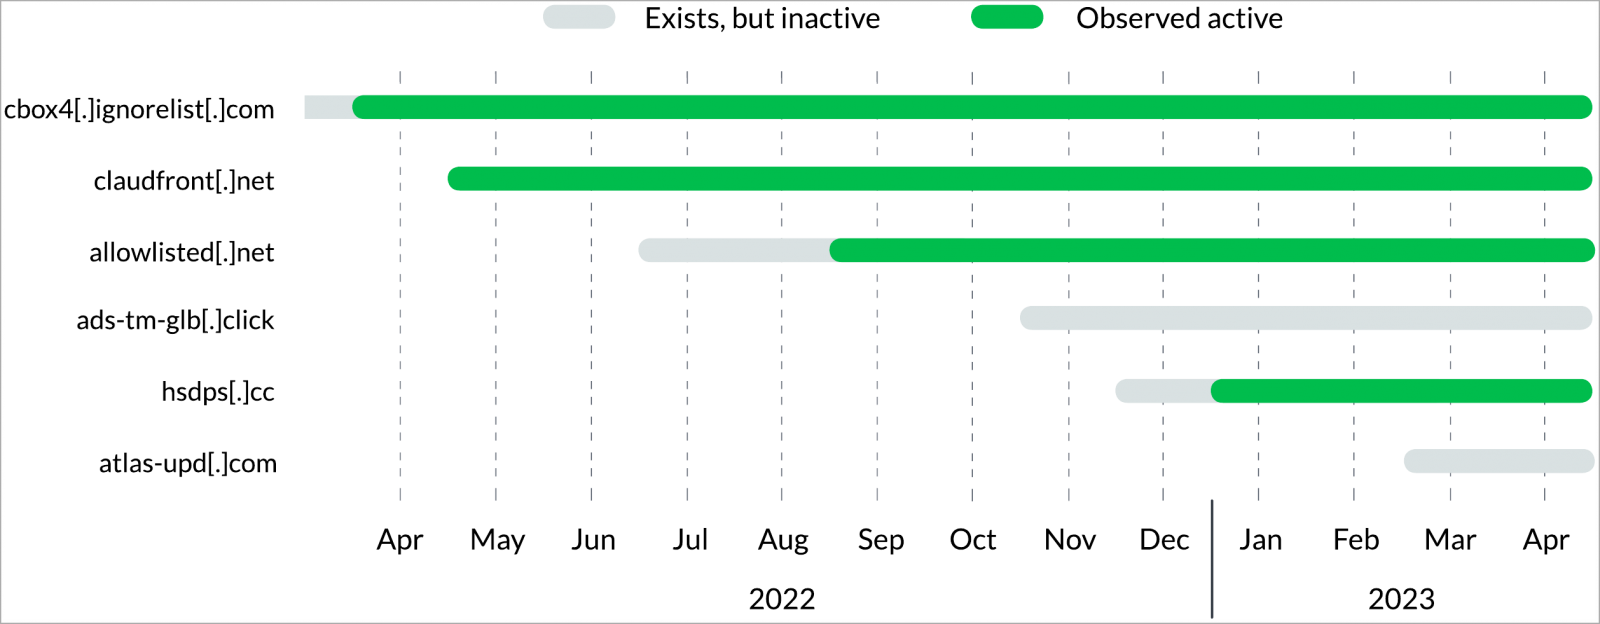 Timeline of Decoy Dog domain registrations